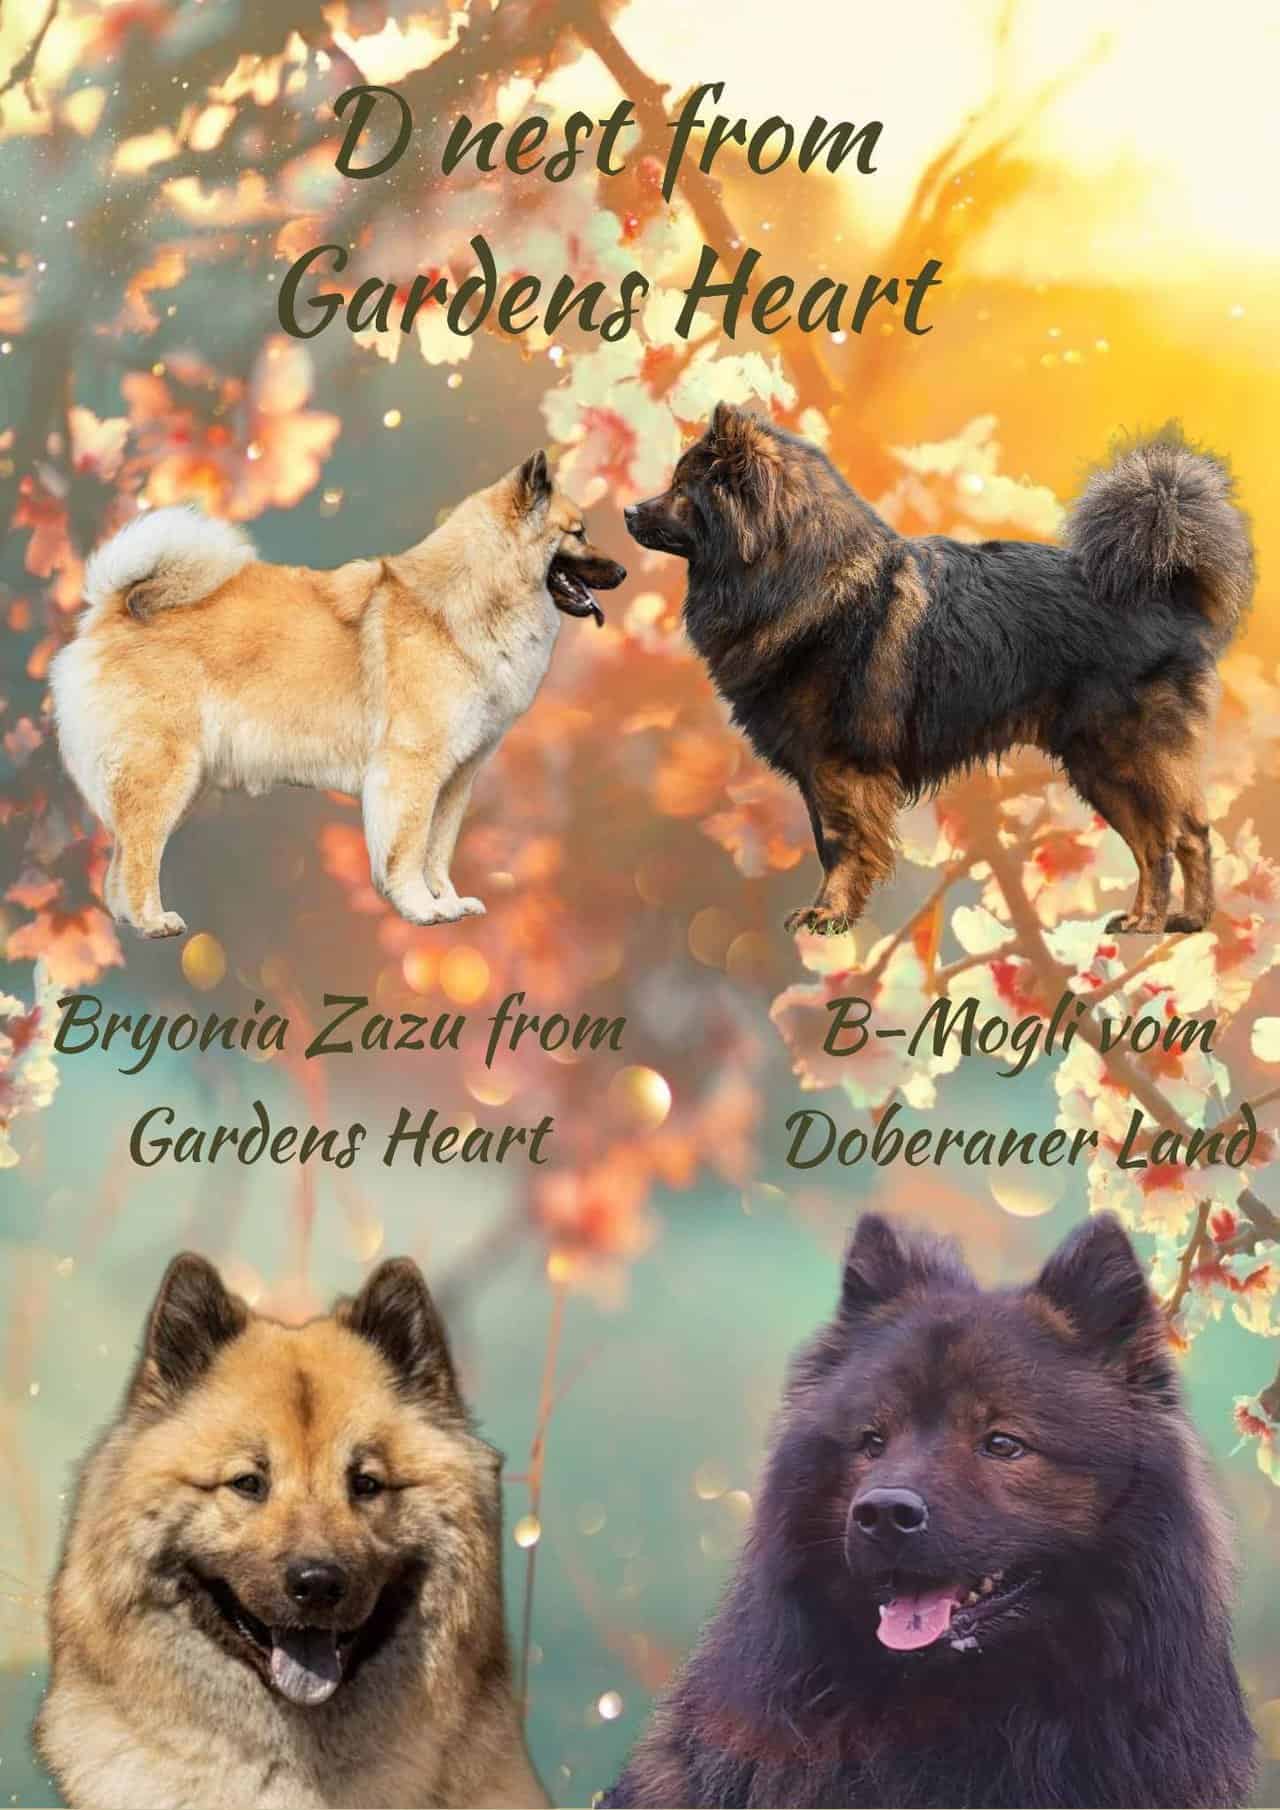 From Gardens Heart D-nest